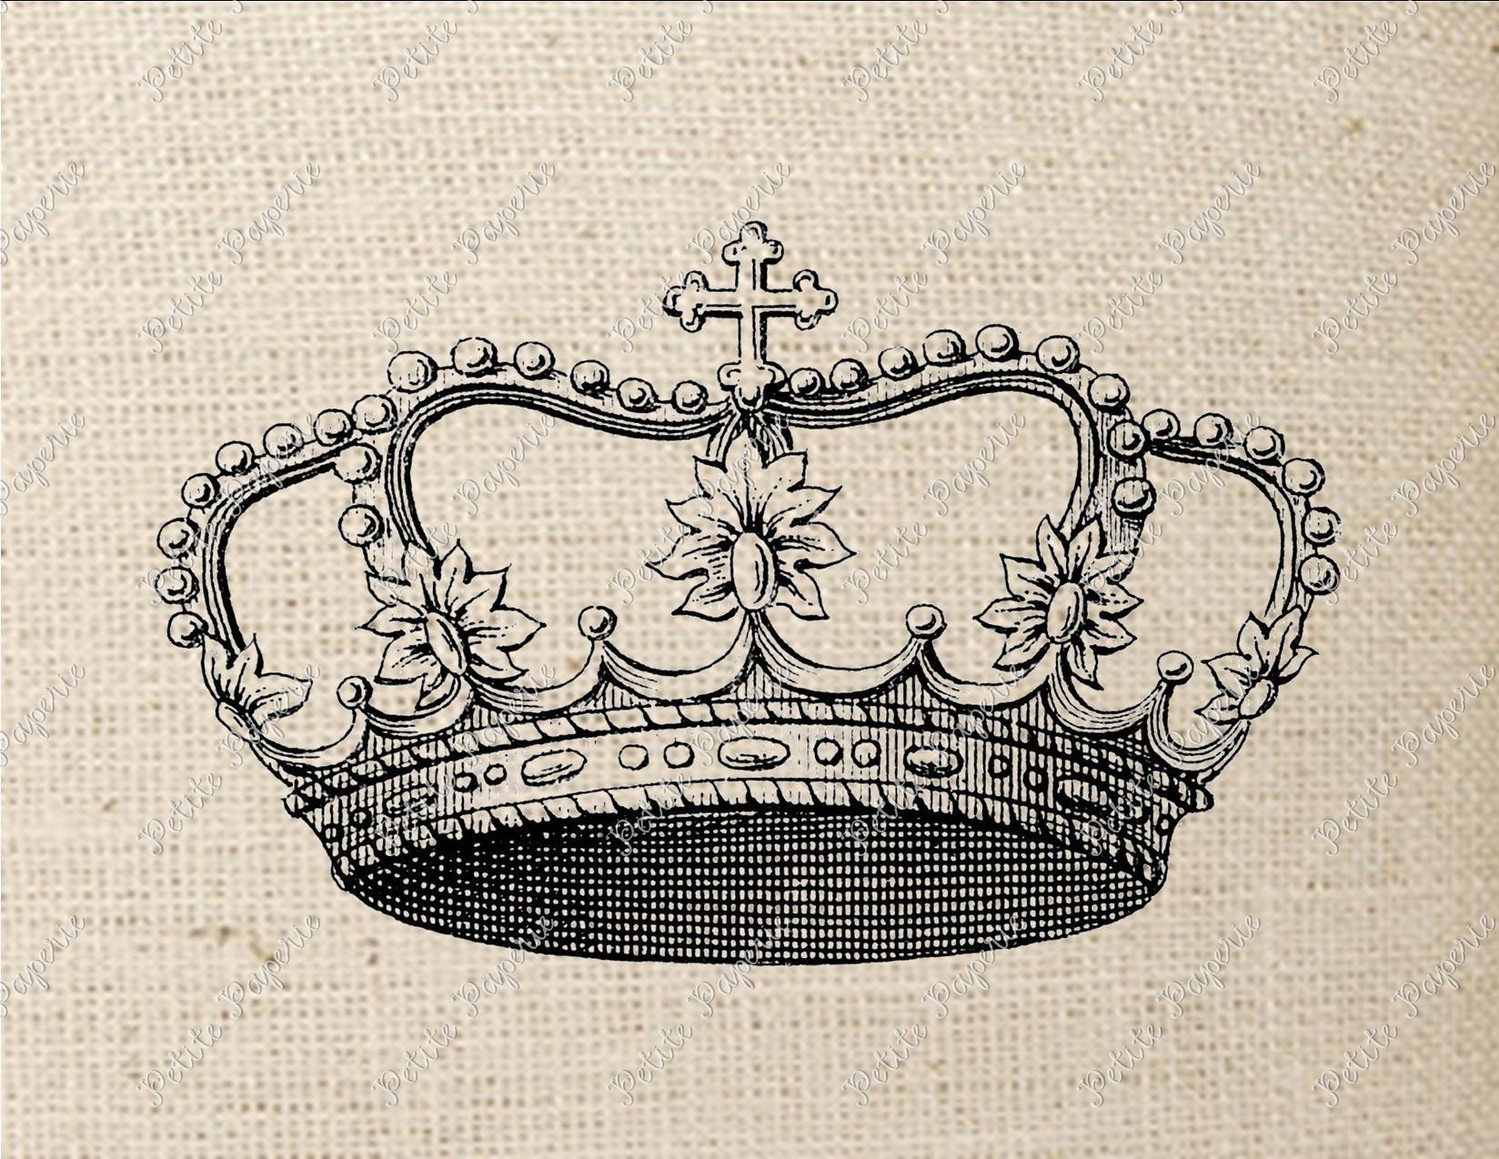 Princess Crown Wallpaper